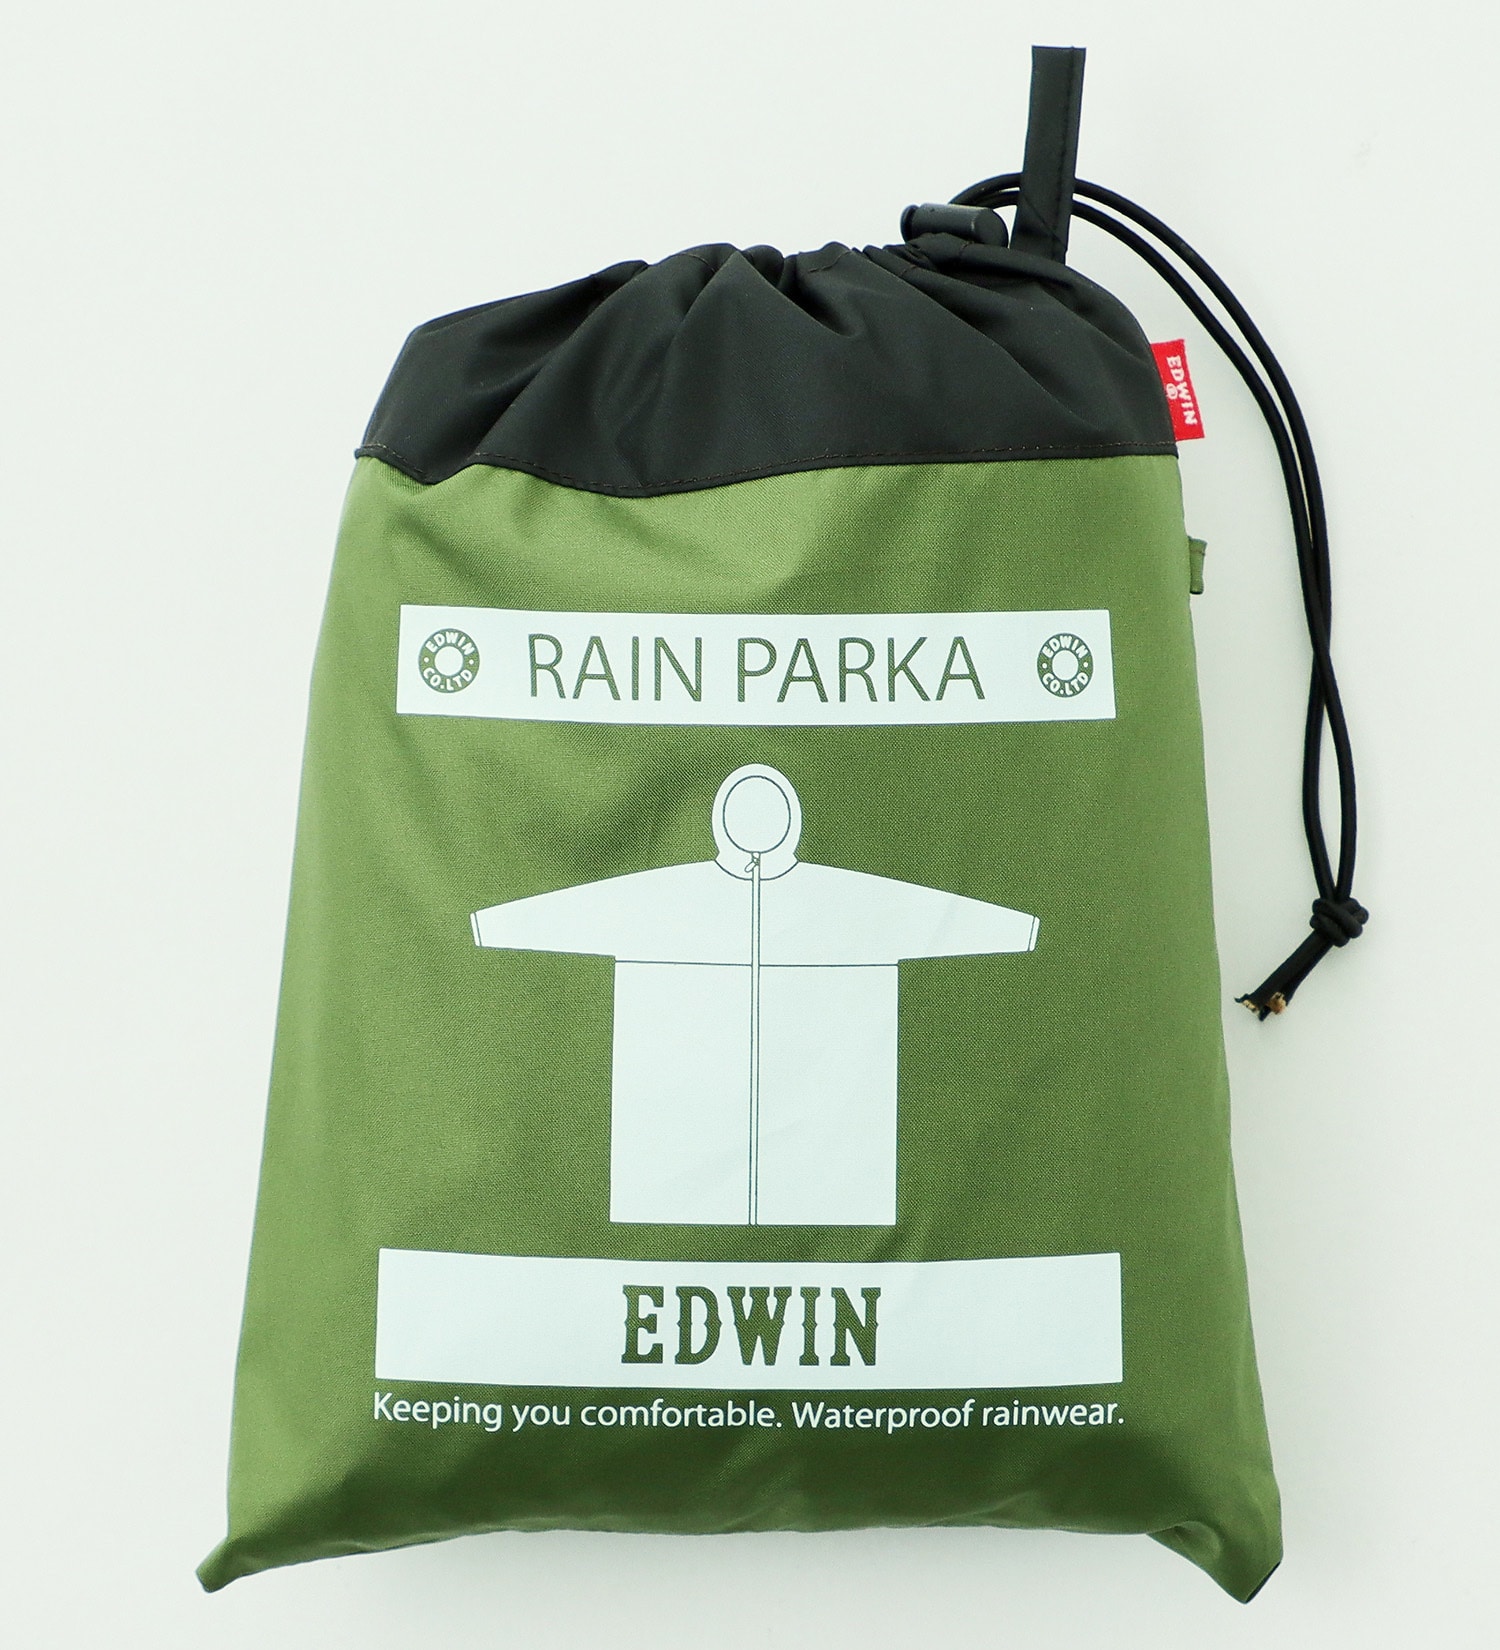 EDWIN(エドウイン)のEDWIN レインパーカー|ファッション雑貨/レインウェア/ポンチョ/メンズ|カーキ